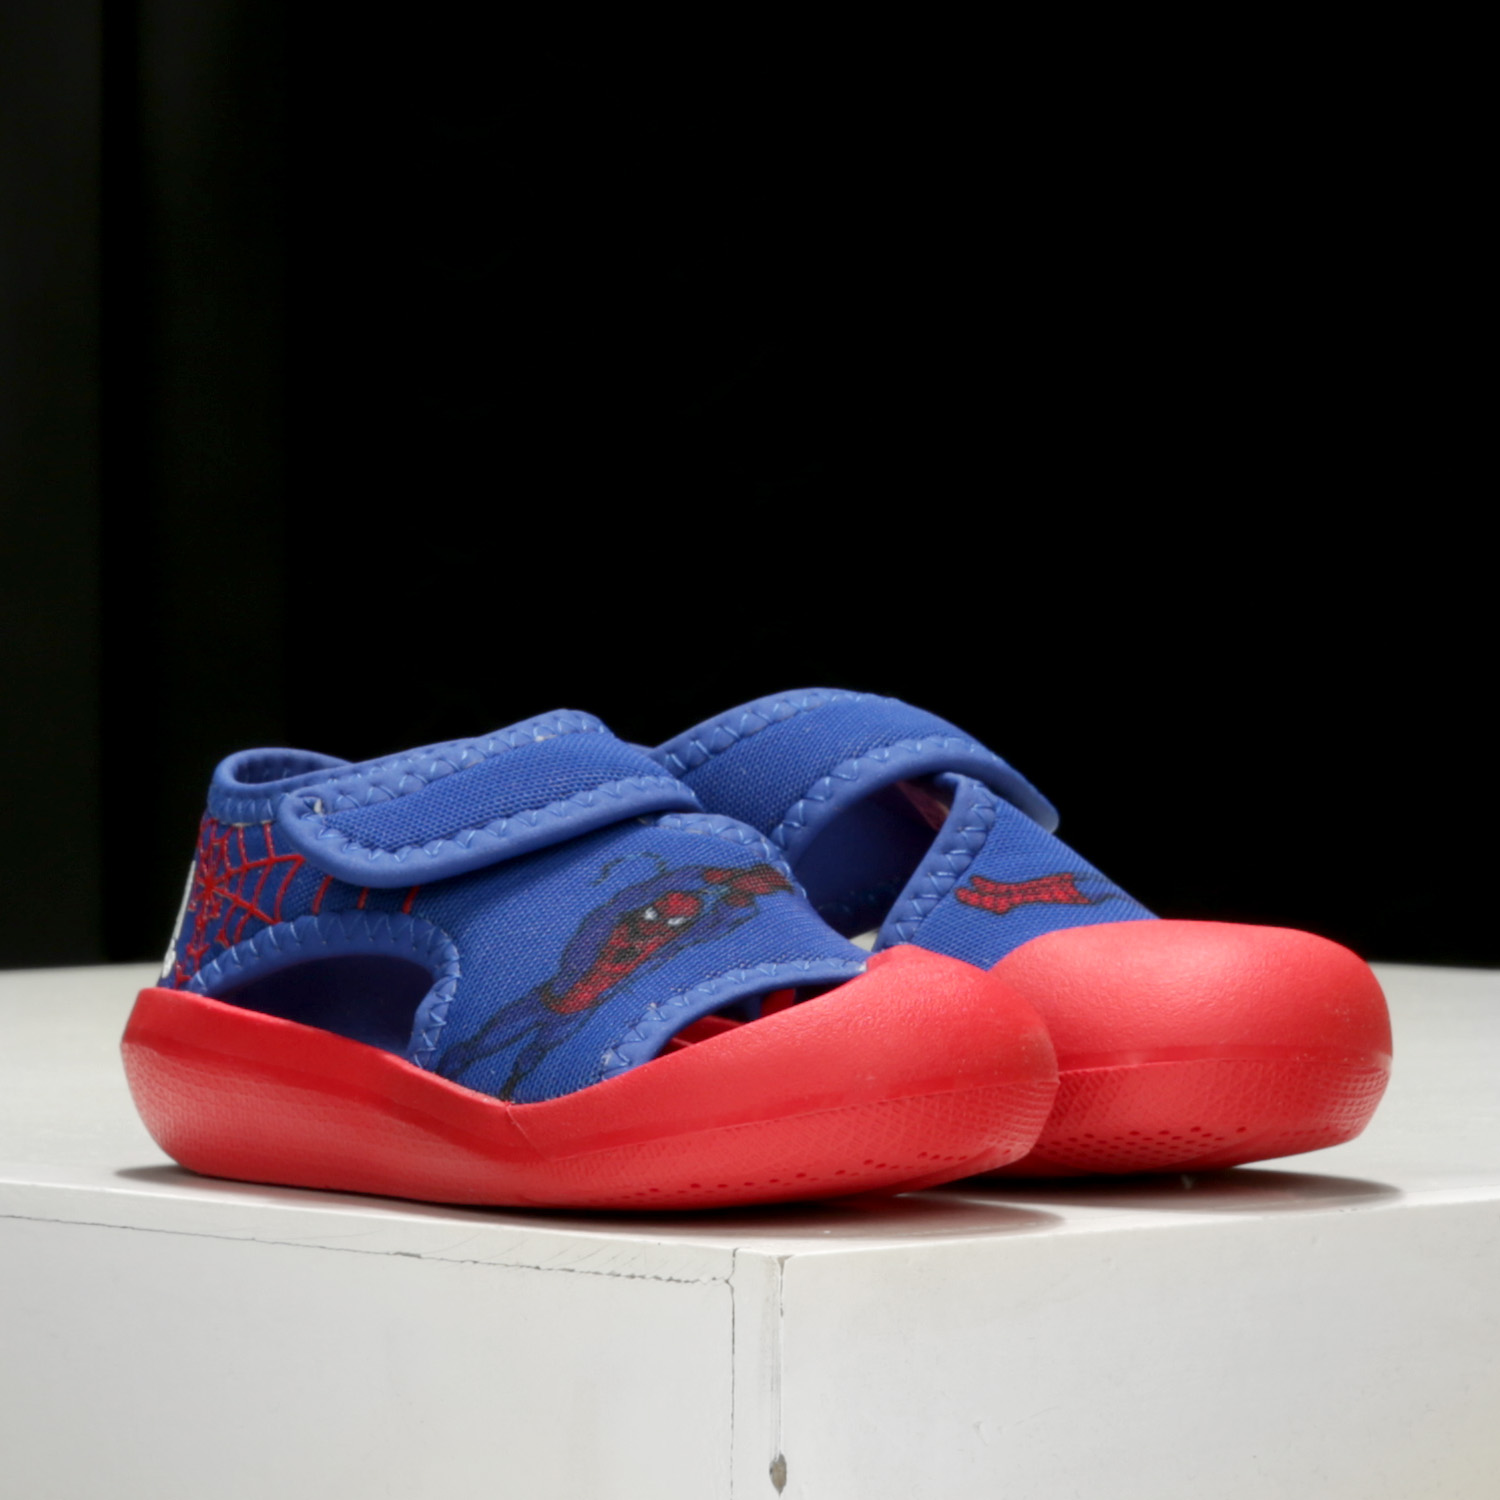 Adidas/阿迪达斯婴童休闲凉鞋